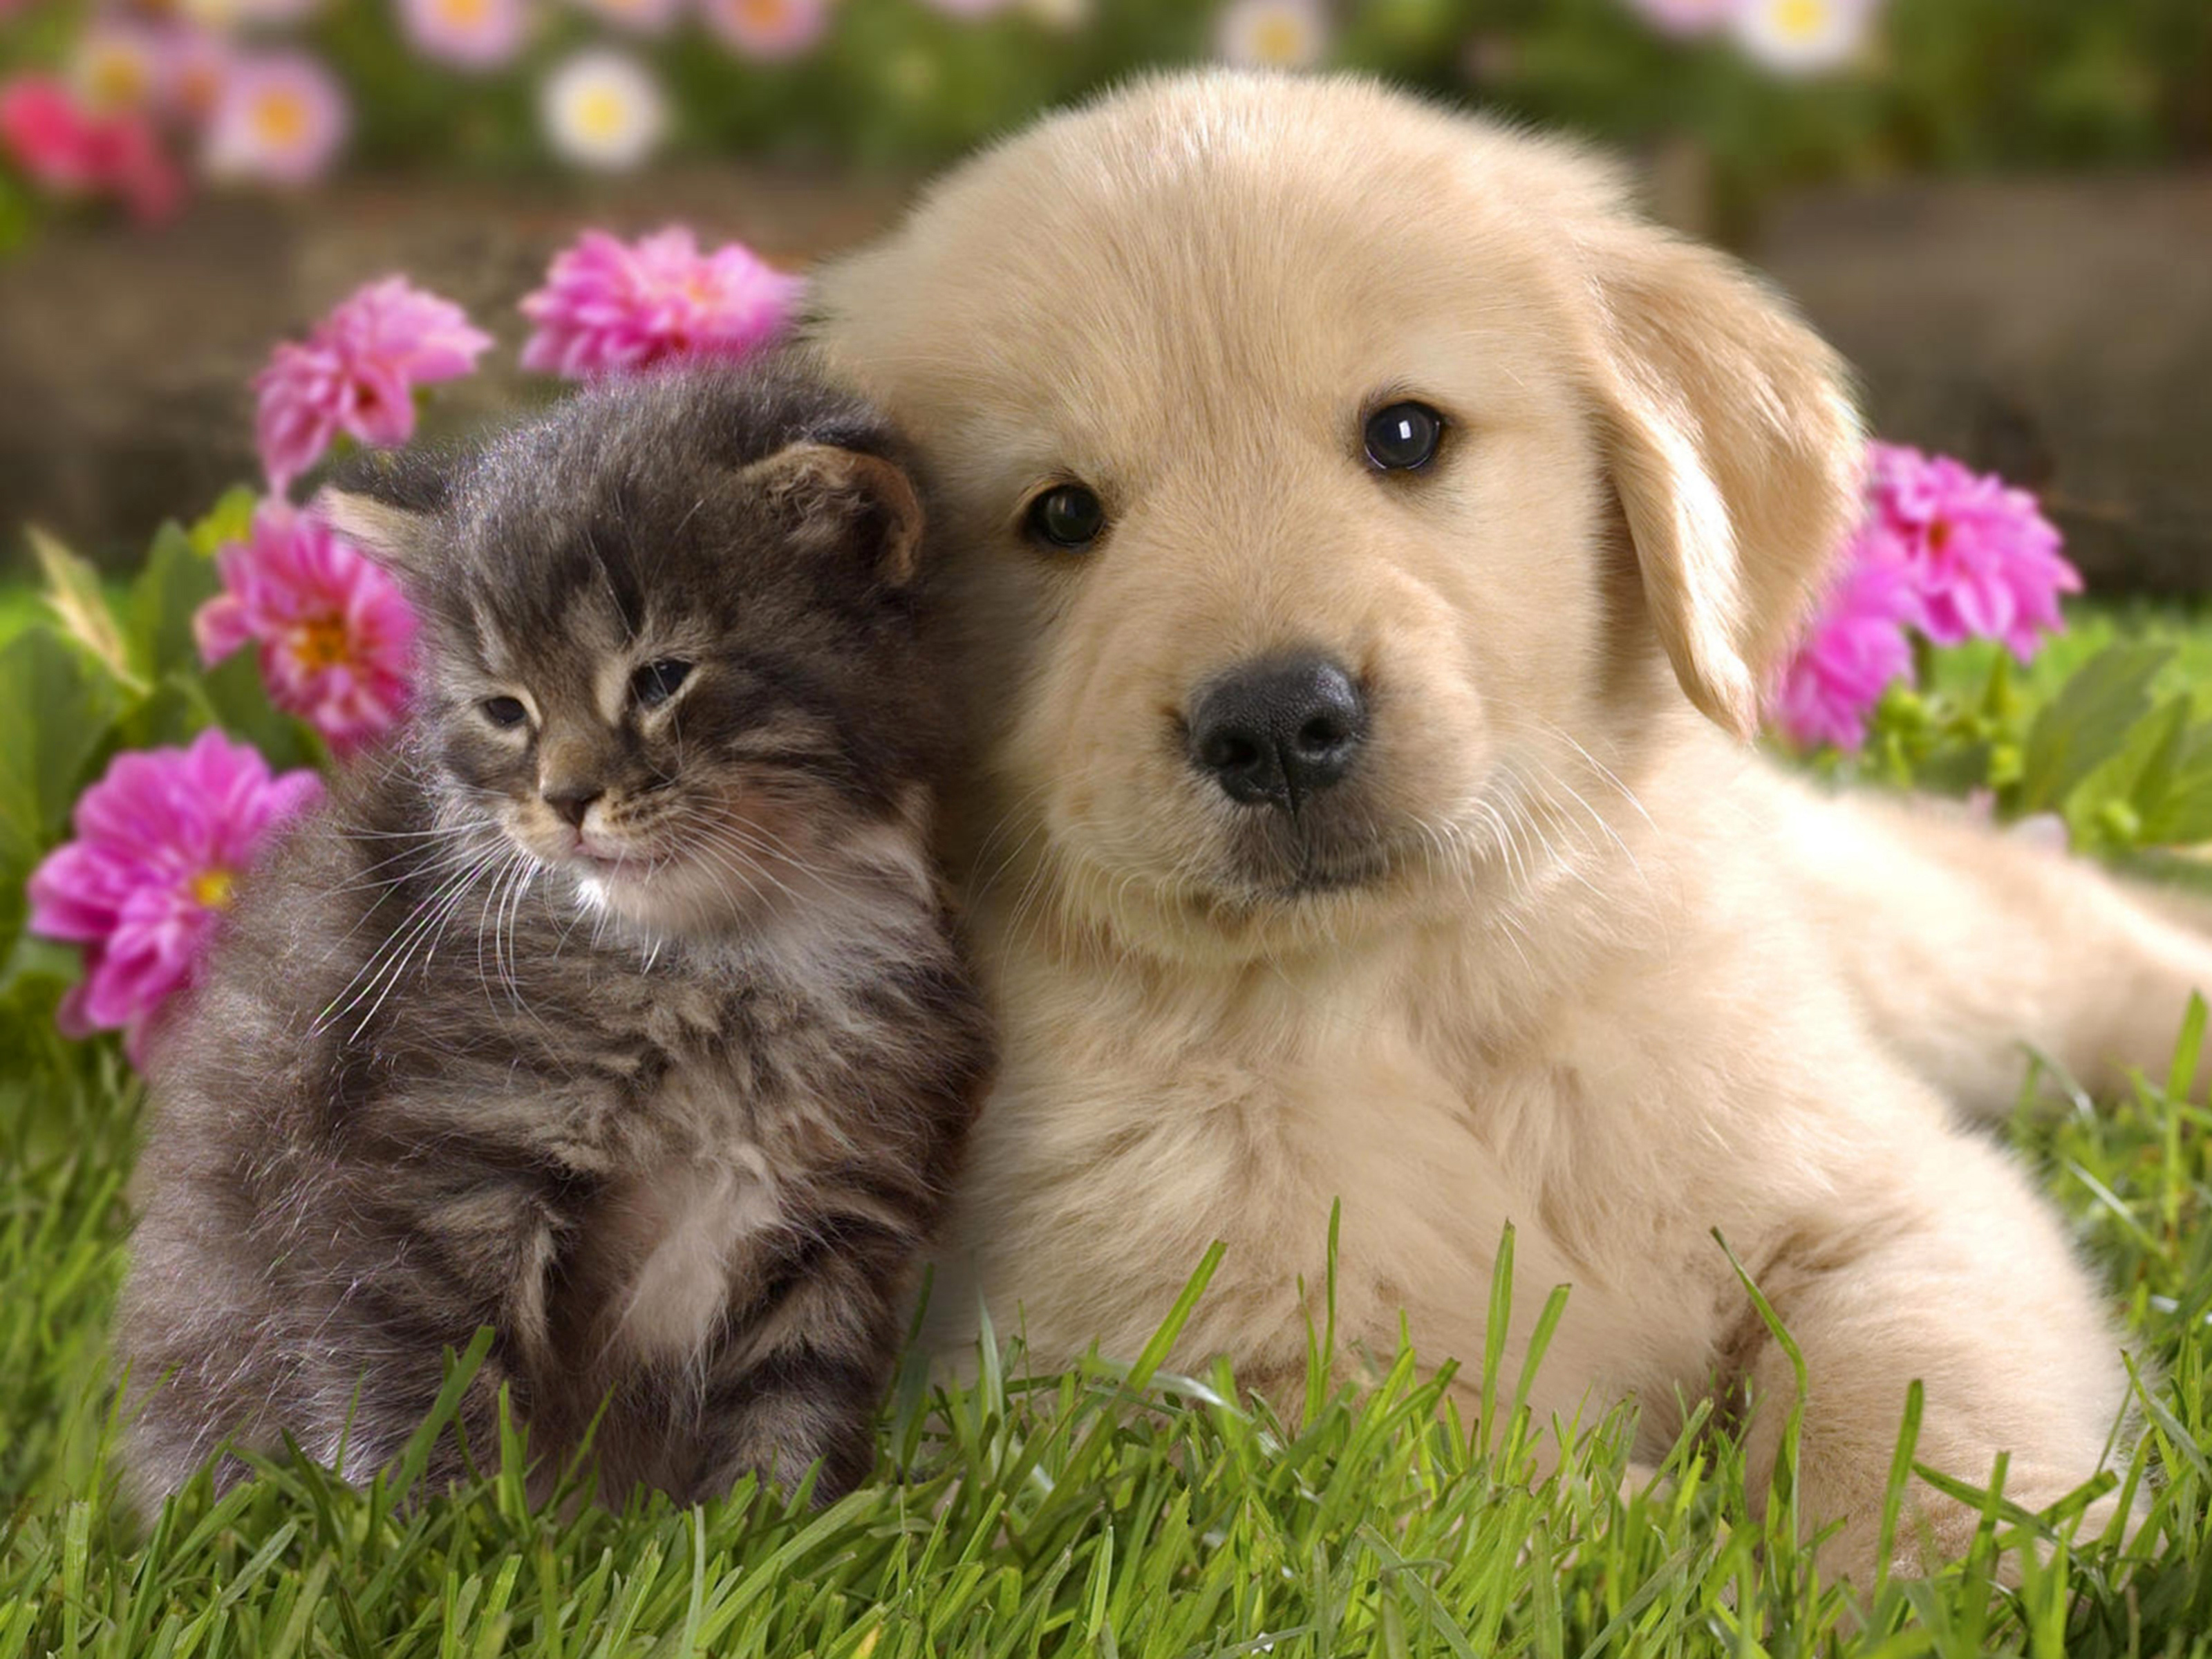 Mèo con và chó đáng yêu: Bạn đã bao giờ nhìn thấy một bức ảnh về một chú chó và một con mèo con dễ thương đến vậy chưa? Đây là một trong những bức ảnh mang tính quyến rũ cao với sự kết hợp giữa chú chó và con mèo. Hãy xem hình ảnh và tận hưởng những giây phút thư giãn và dễ thương.